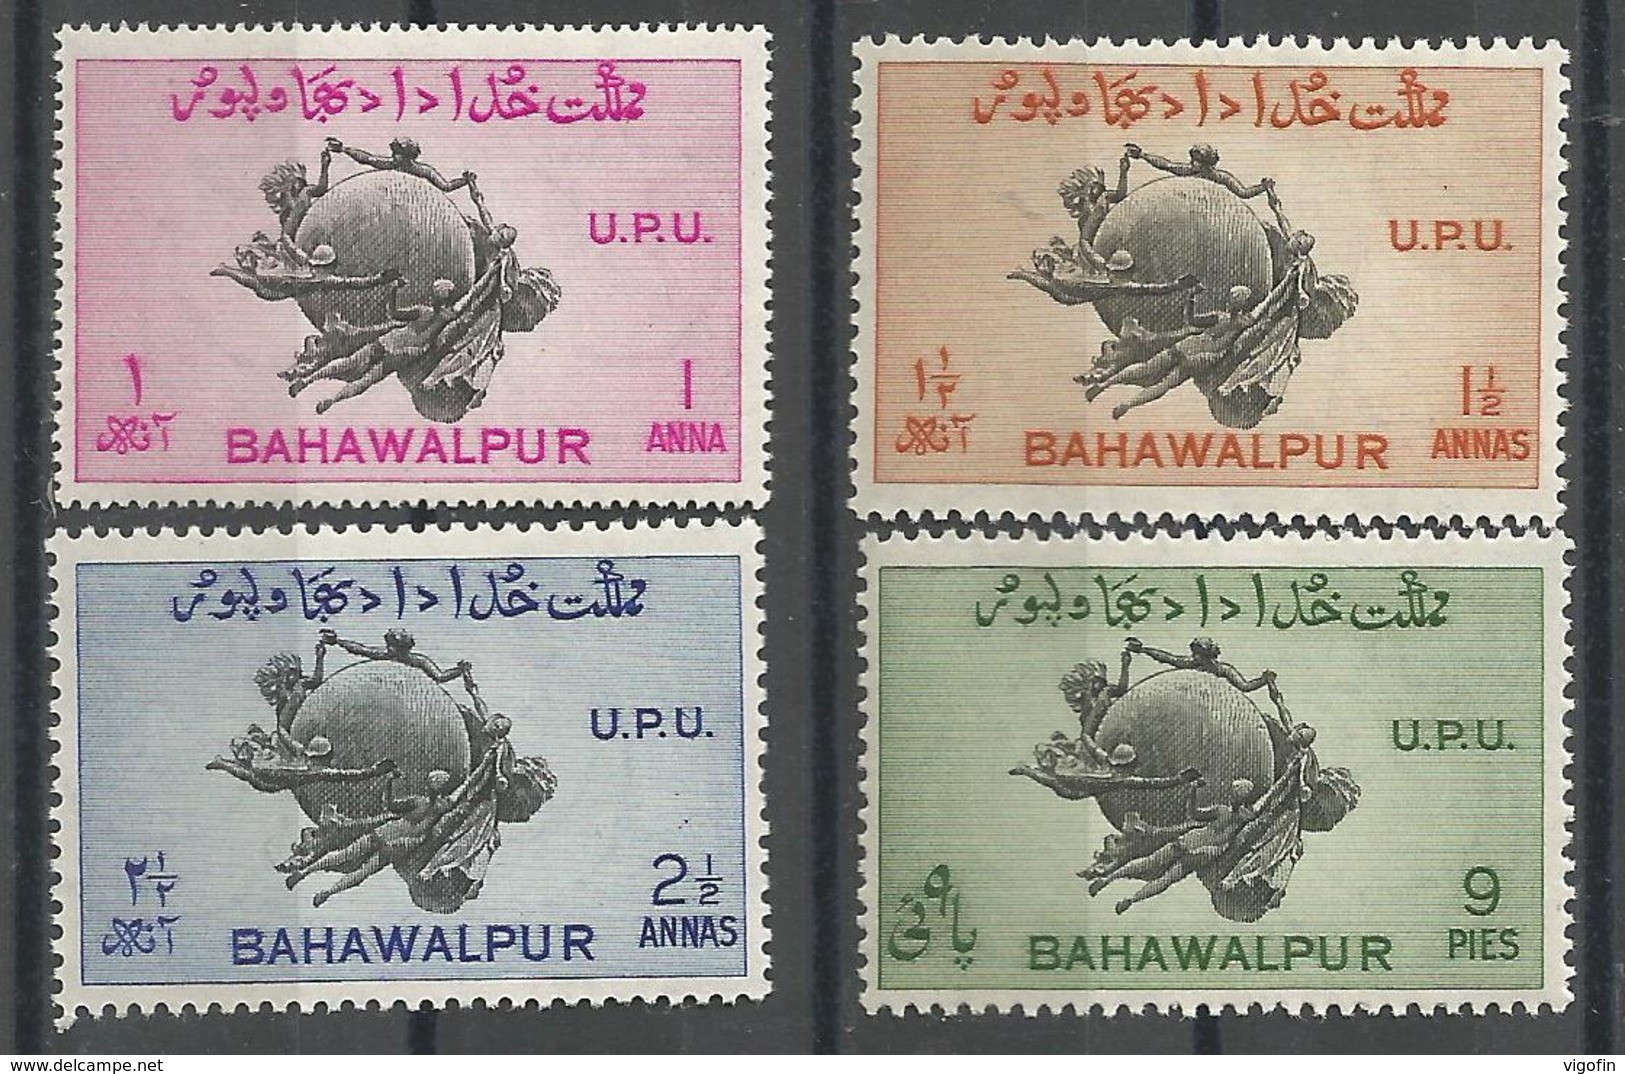 INDIA BAHWALPURA, U P U 1 X 4v, MNH - Bahawalpur